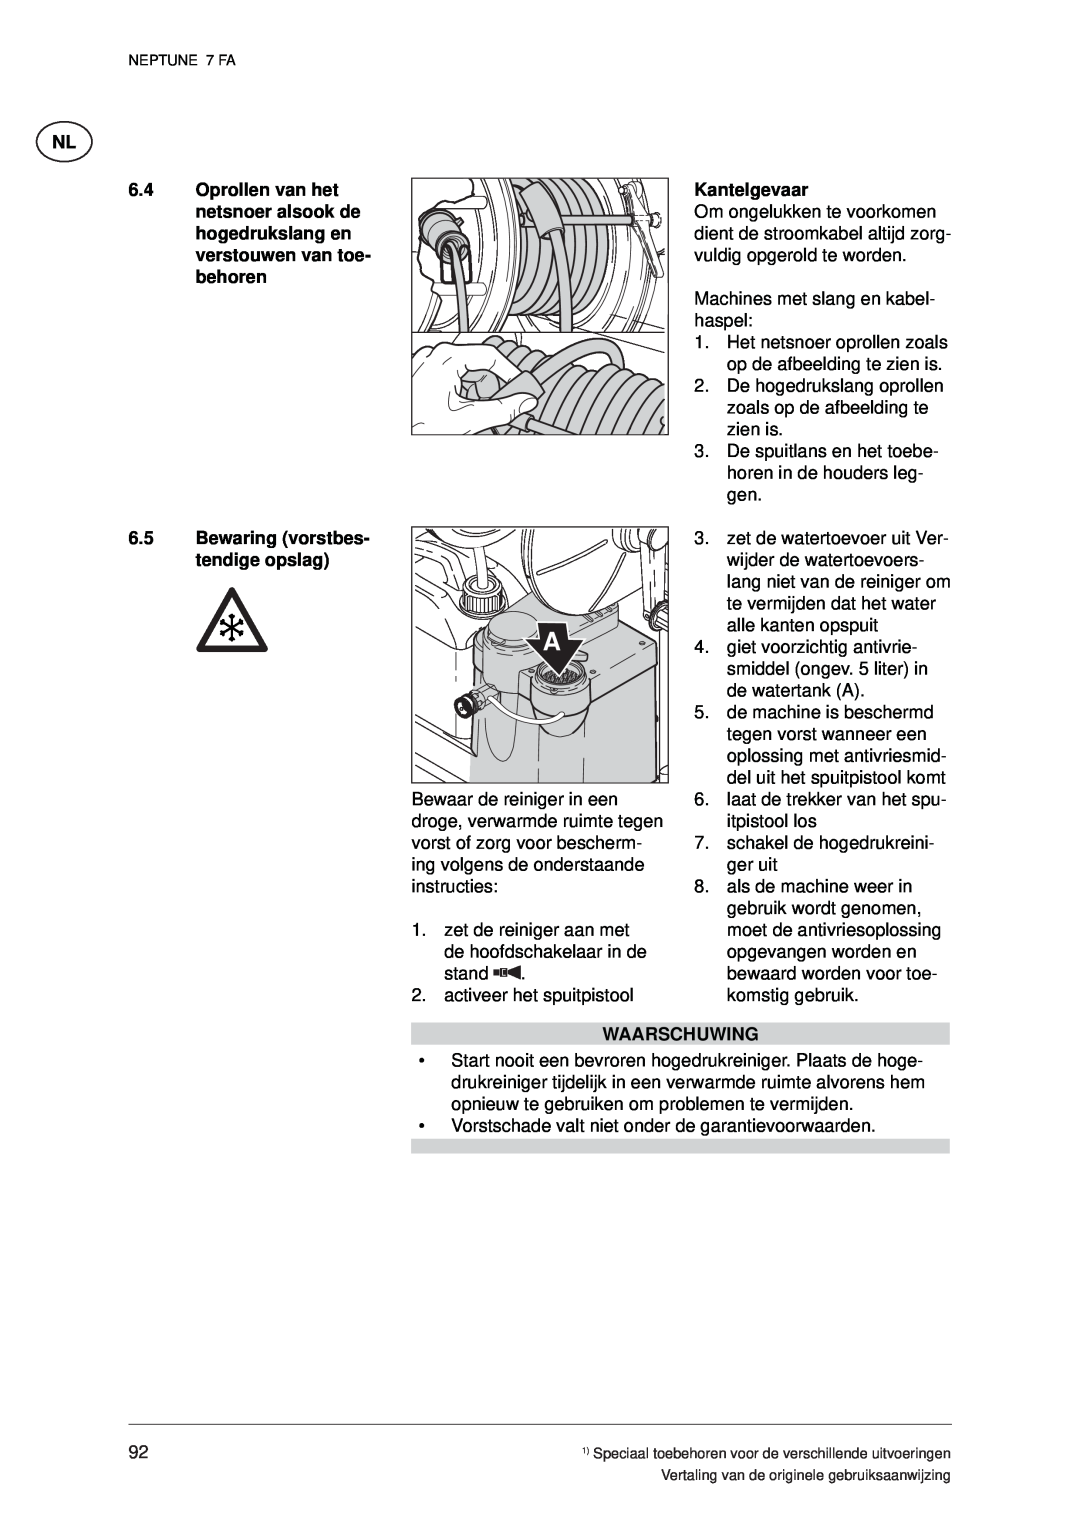 Nilfisk-ALTO 7 FA manual Kantelgevaar, Bewaring vorstbes- tendige opslag, Waarschuwing 